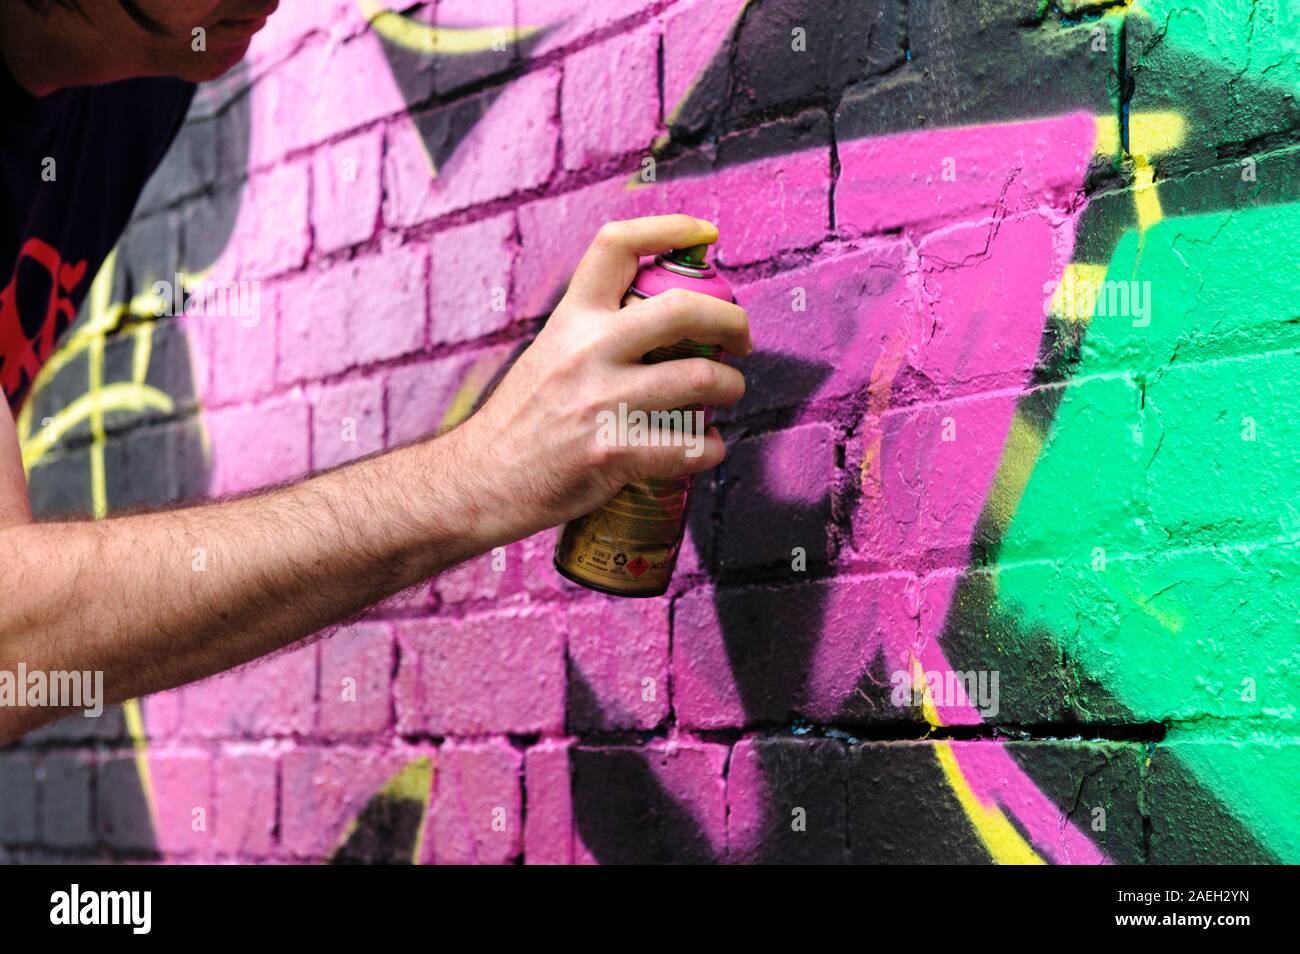 Artiste de graffiti masculin restant son propre dessin sur un noir mur Banque D'Images